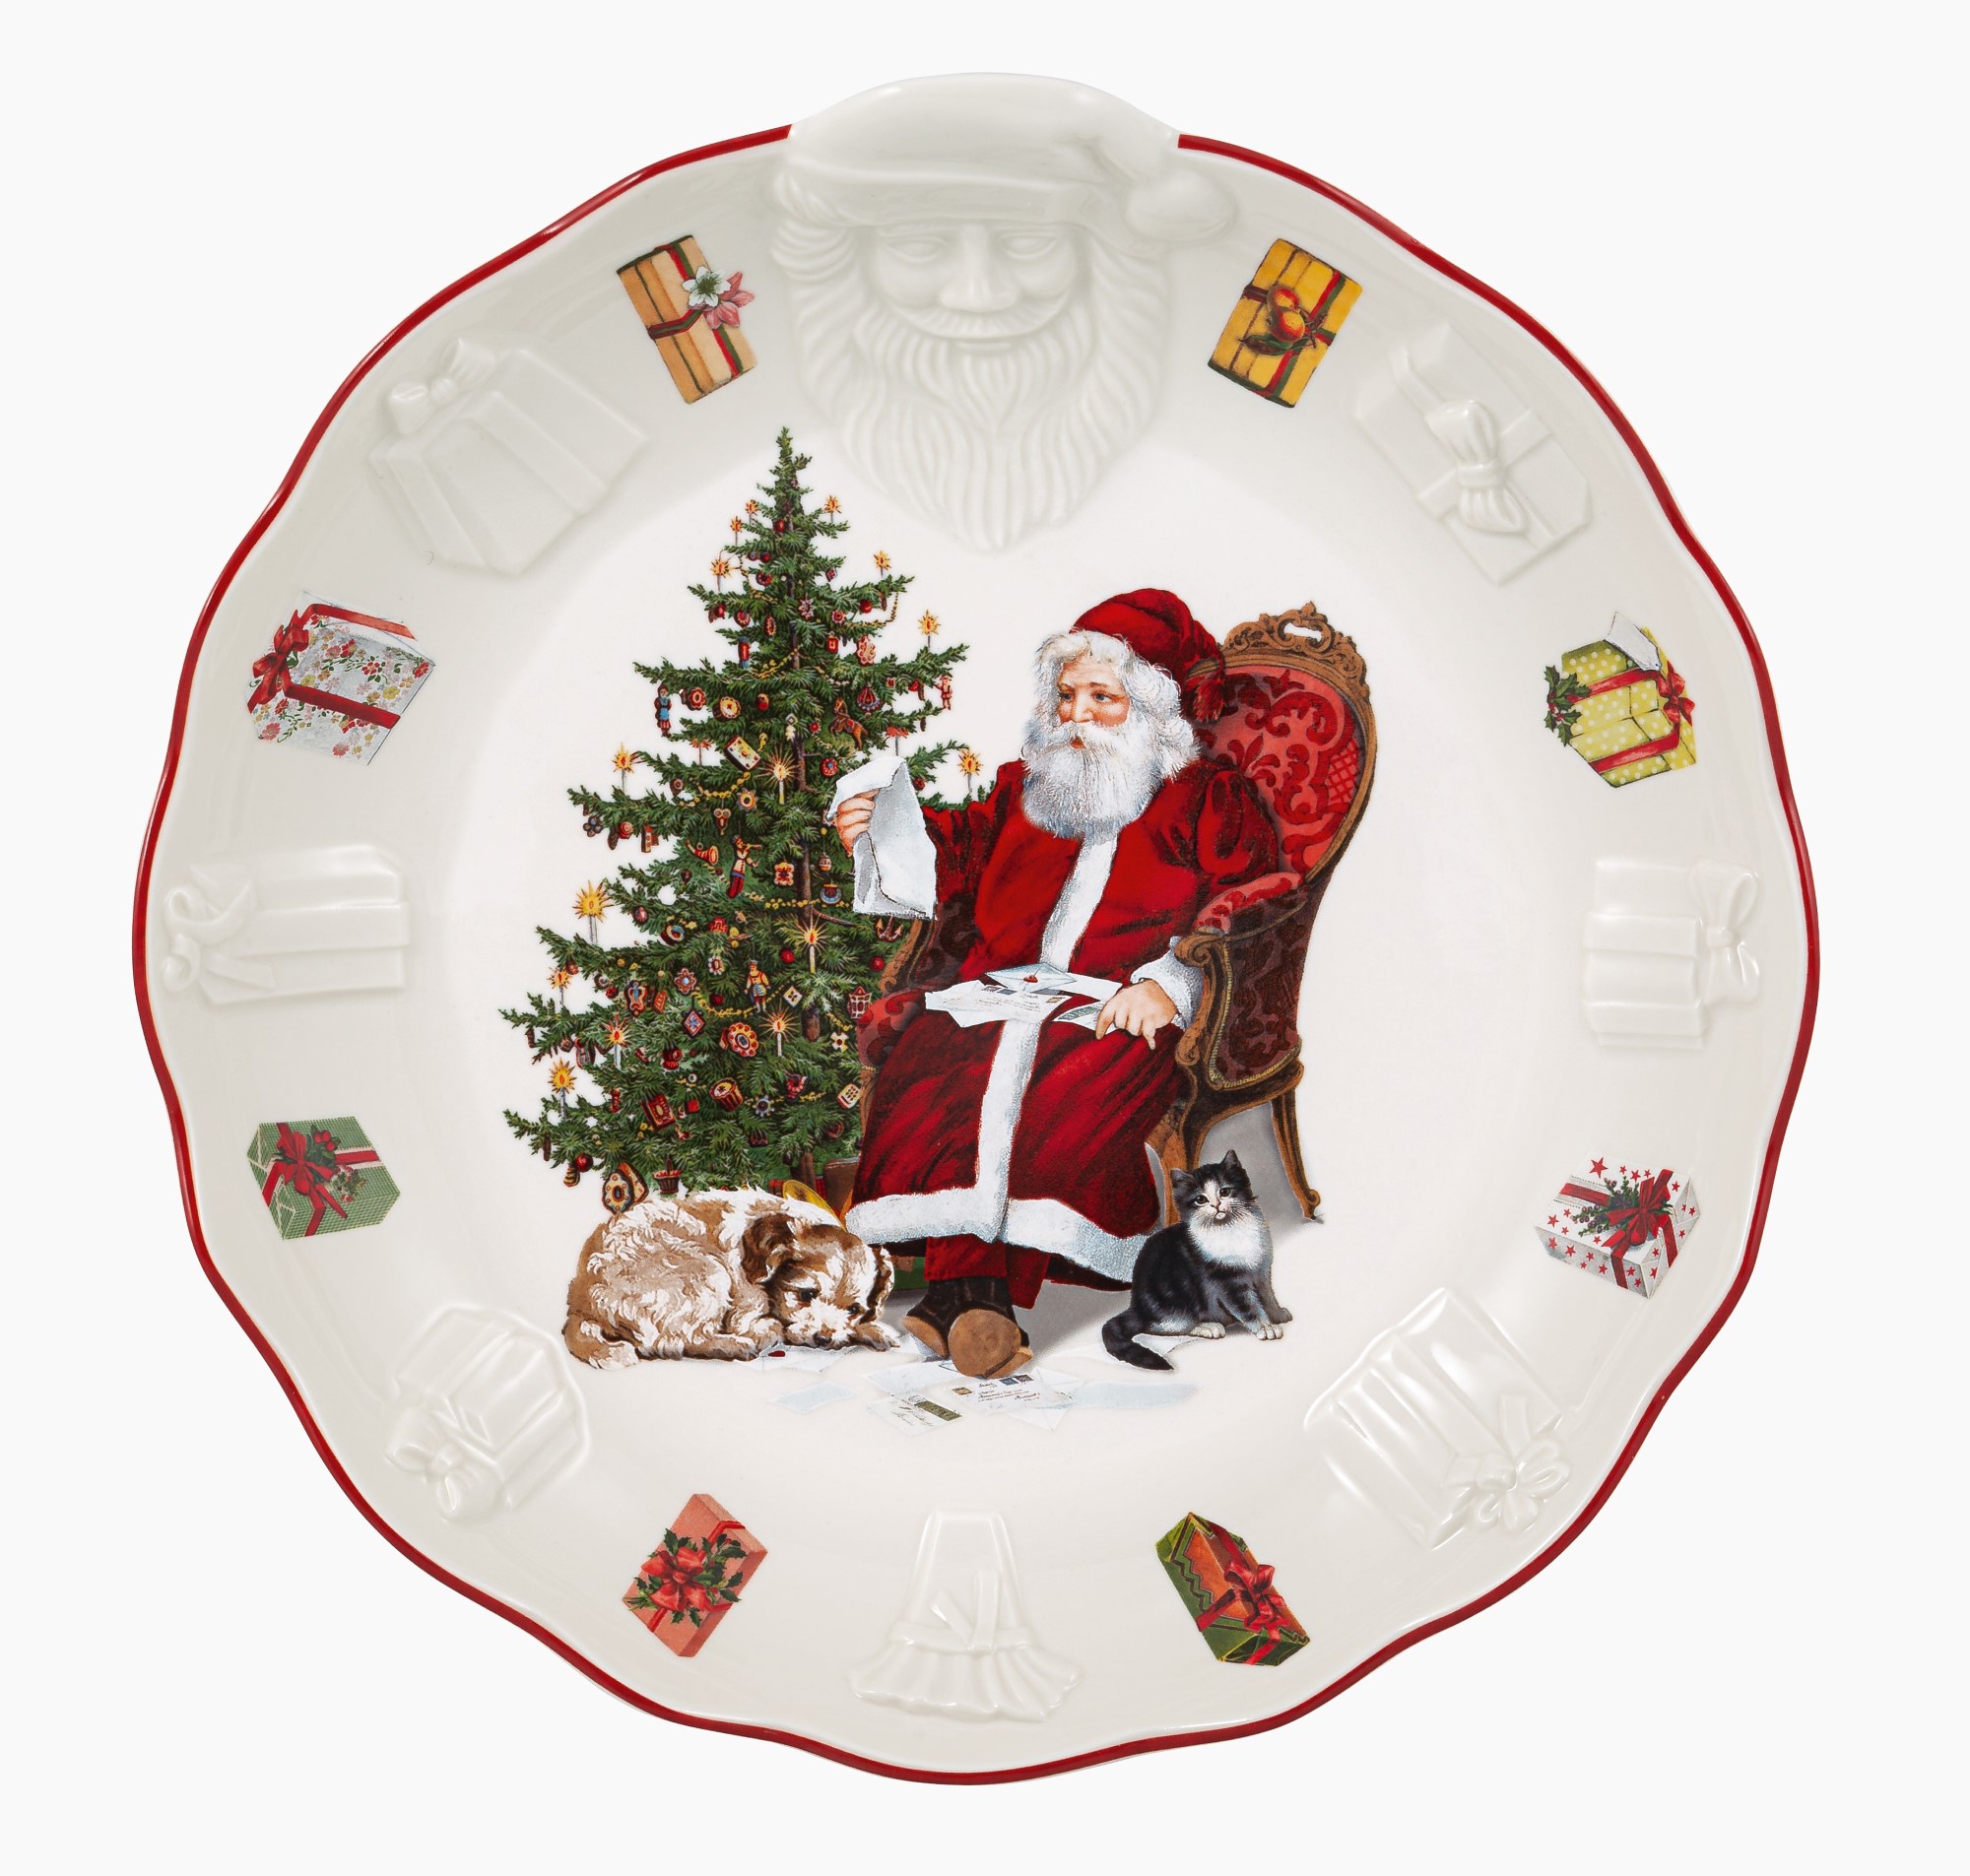 Bol Villeroy & Boch Toy's Fantasy Santa Wish List 25cm